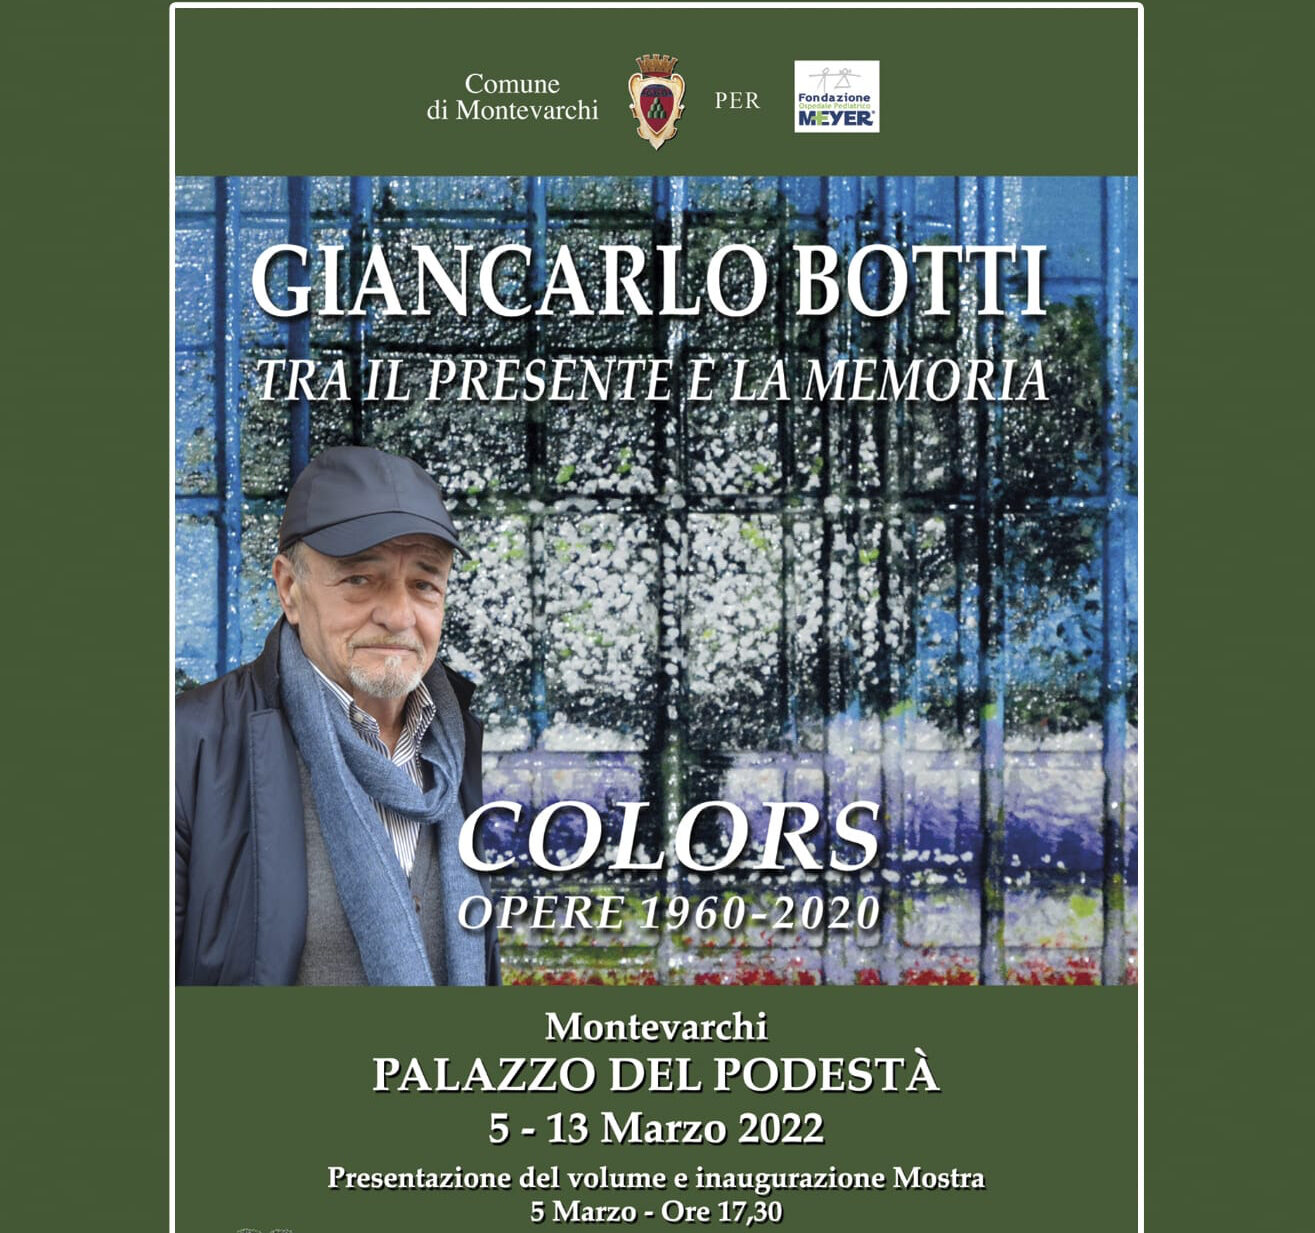 Giancarlo Botti tra il presente e la memoria: mostra dell’artista montevarchino in Palazzo del Podestà tra il 5 e il 13 marzo